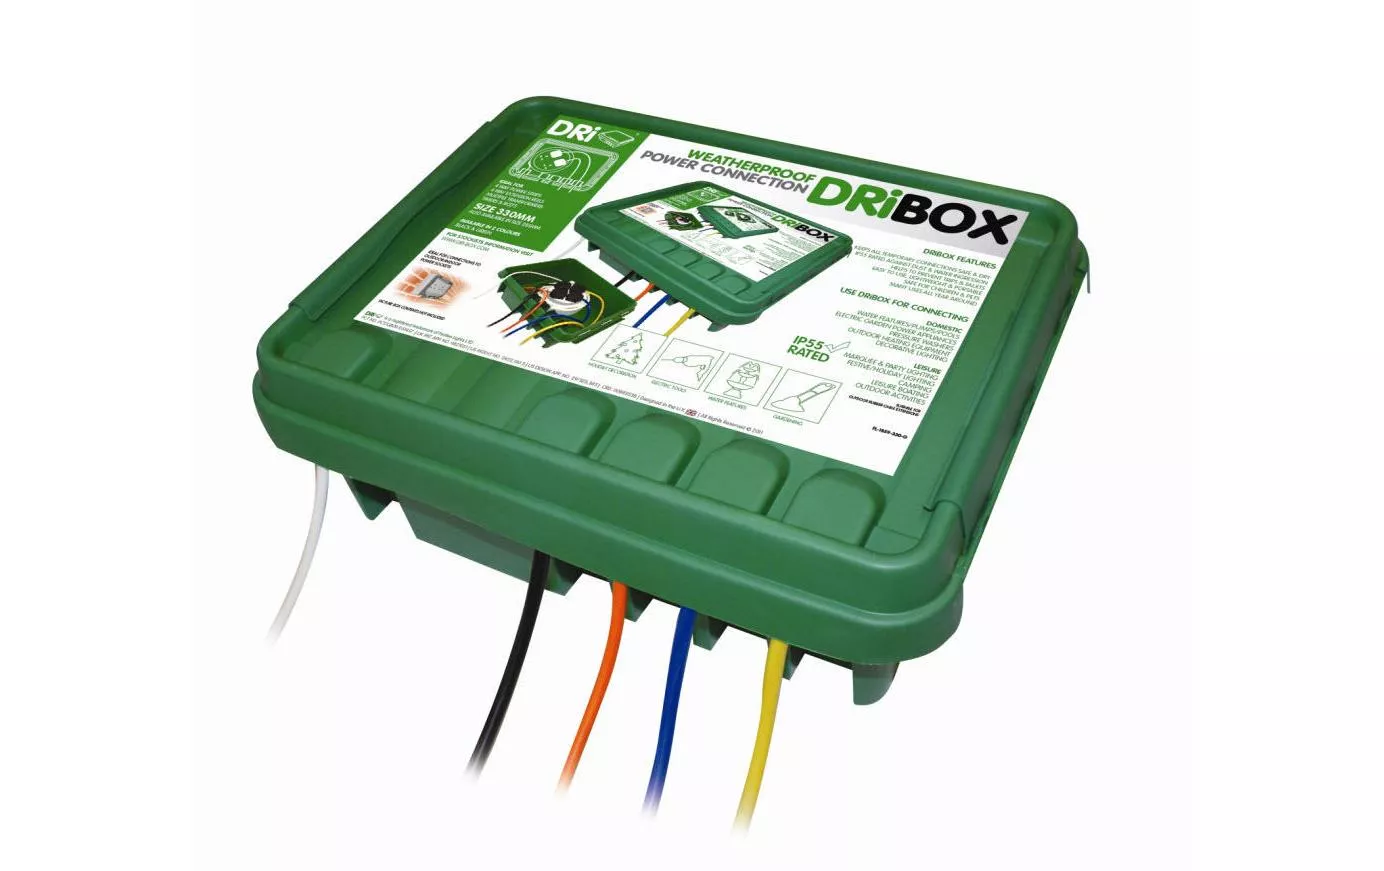 Box per cavi DRiBox 230 x 330 x 140 mm